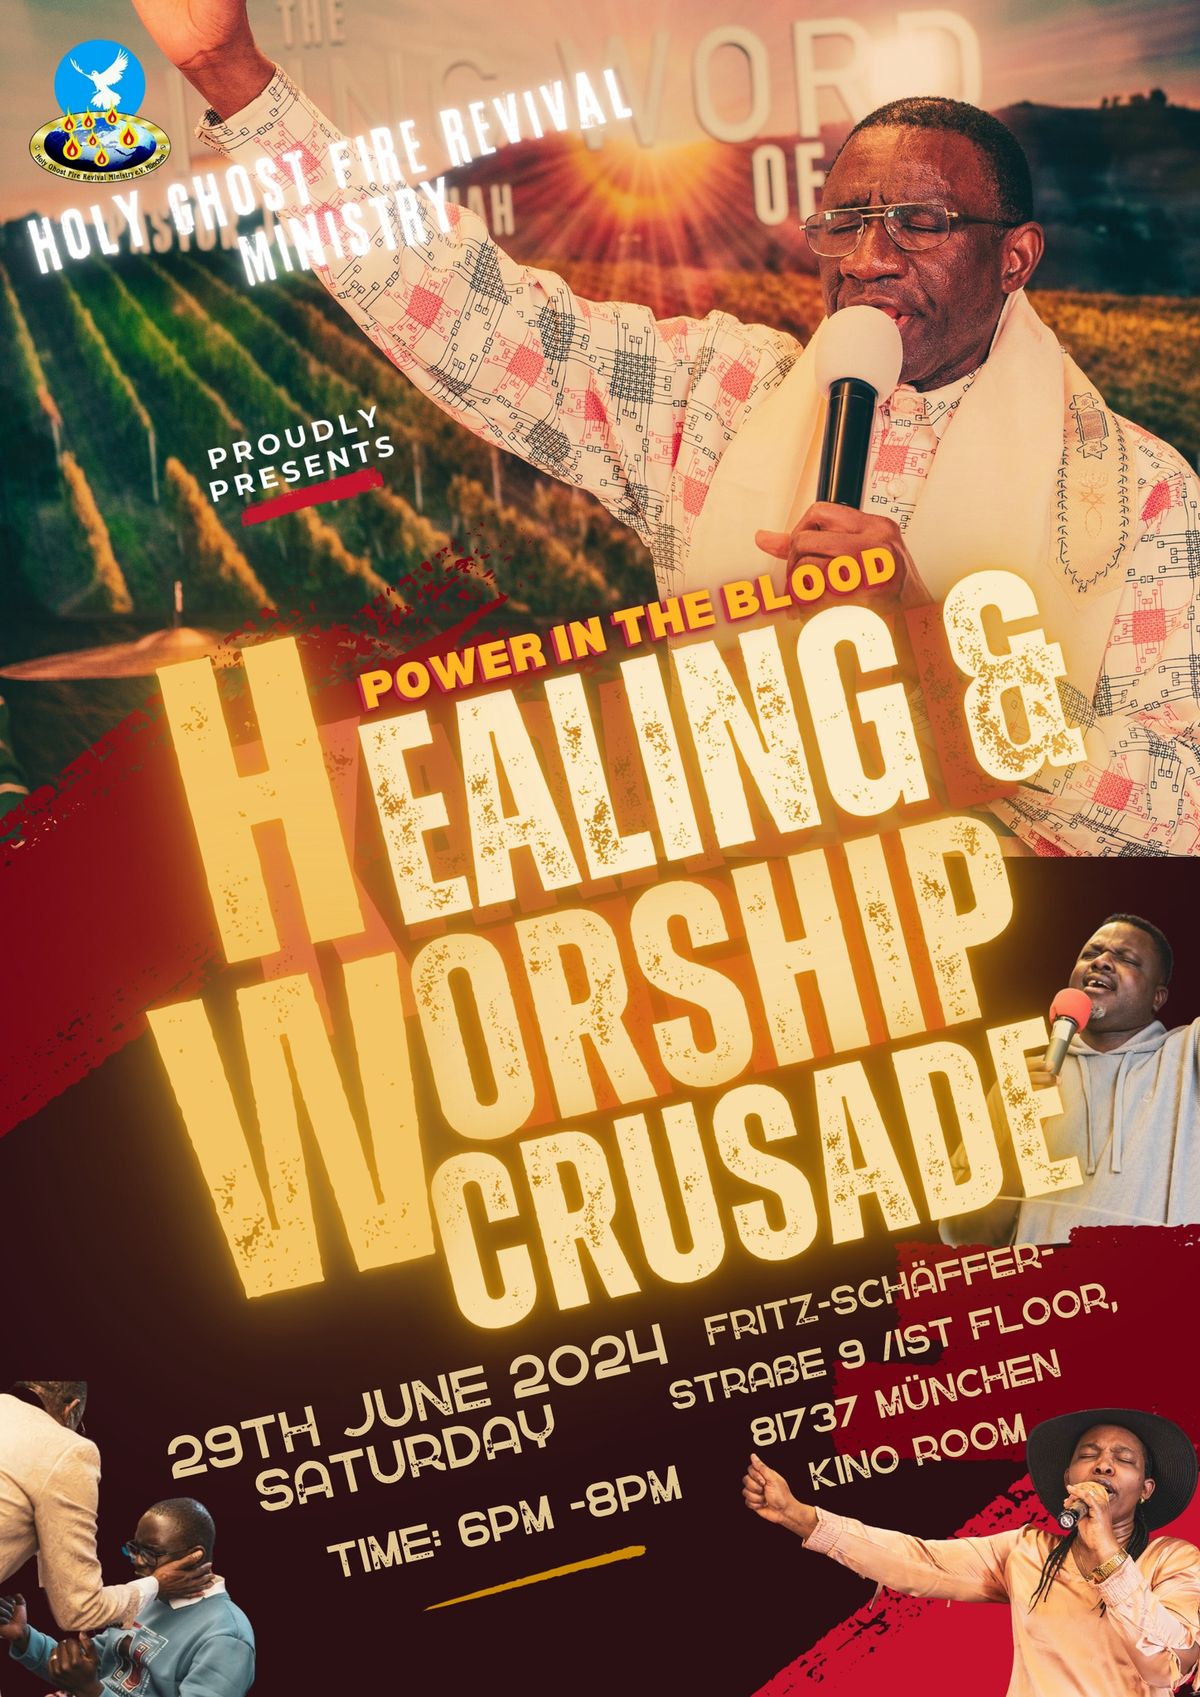 Healing & Worship Crusade